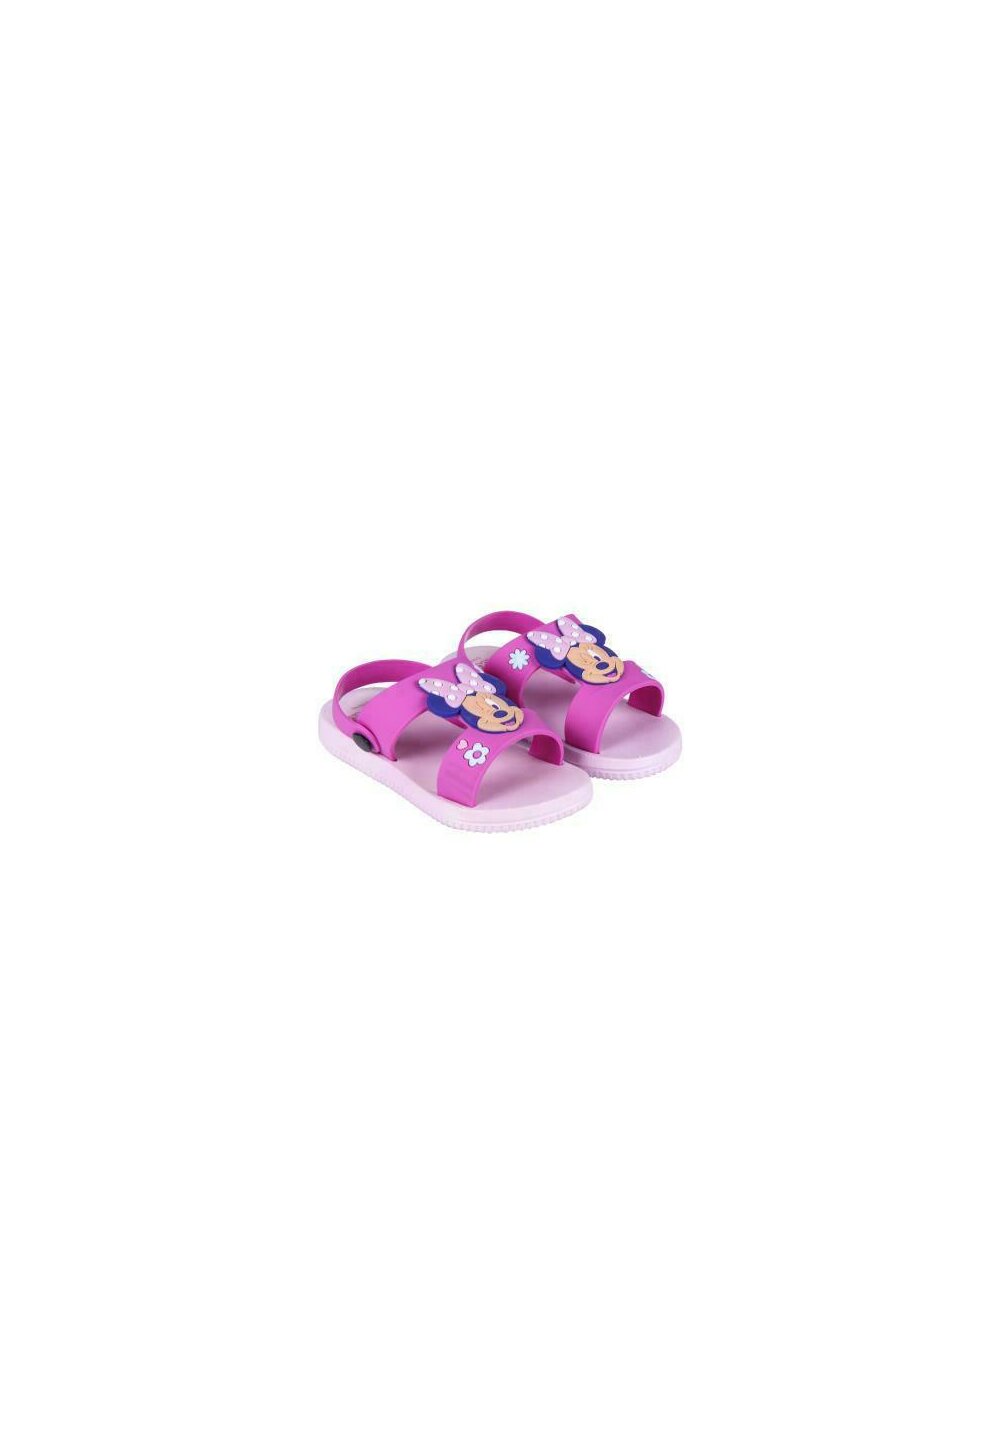 Sandale, Minnie M. roz cu floricele